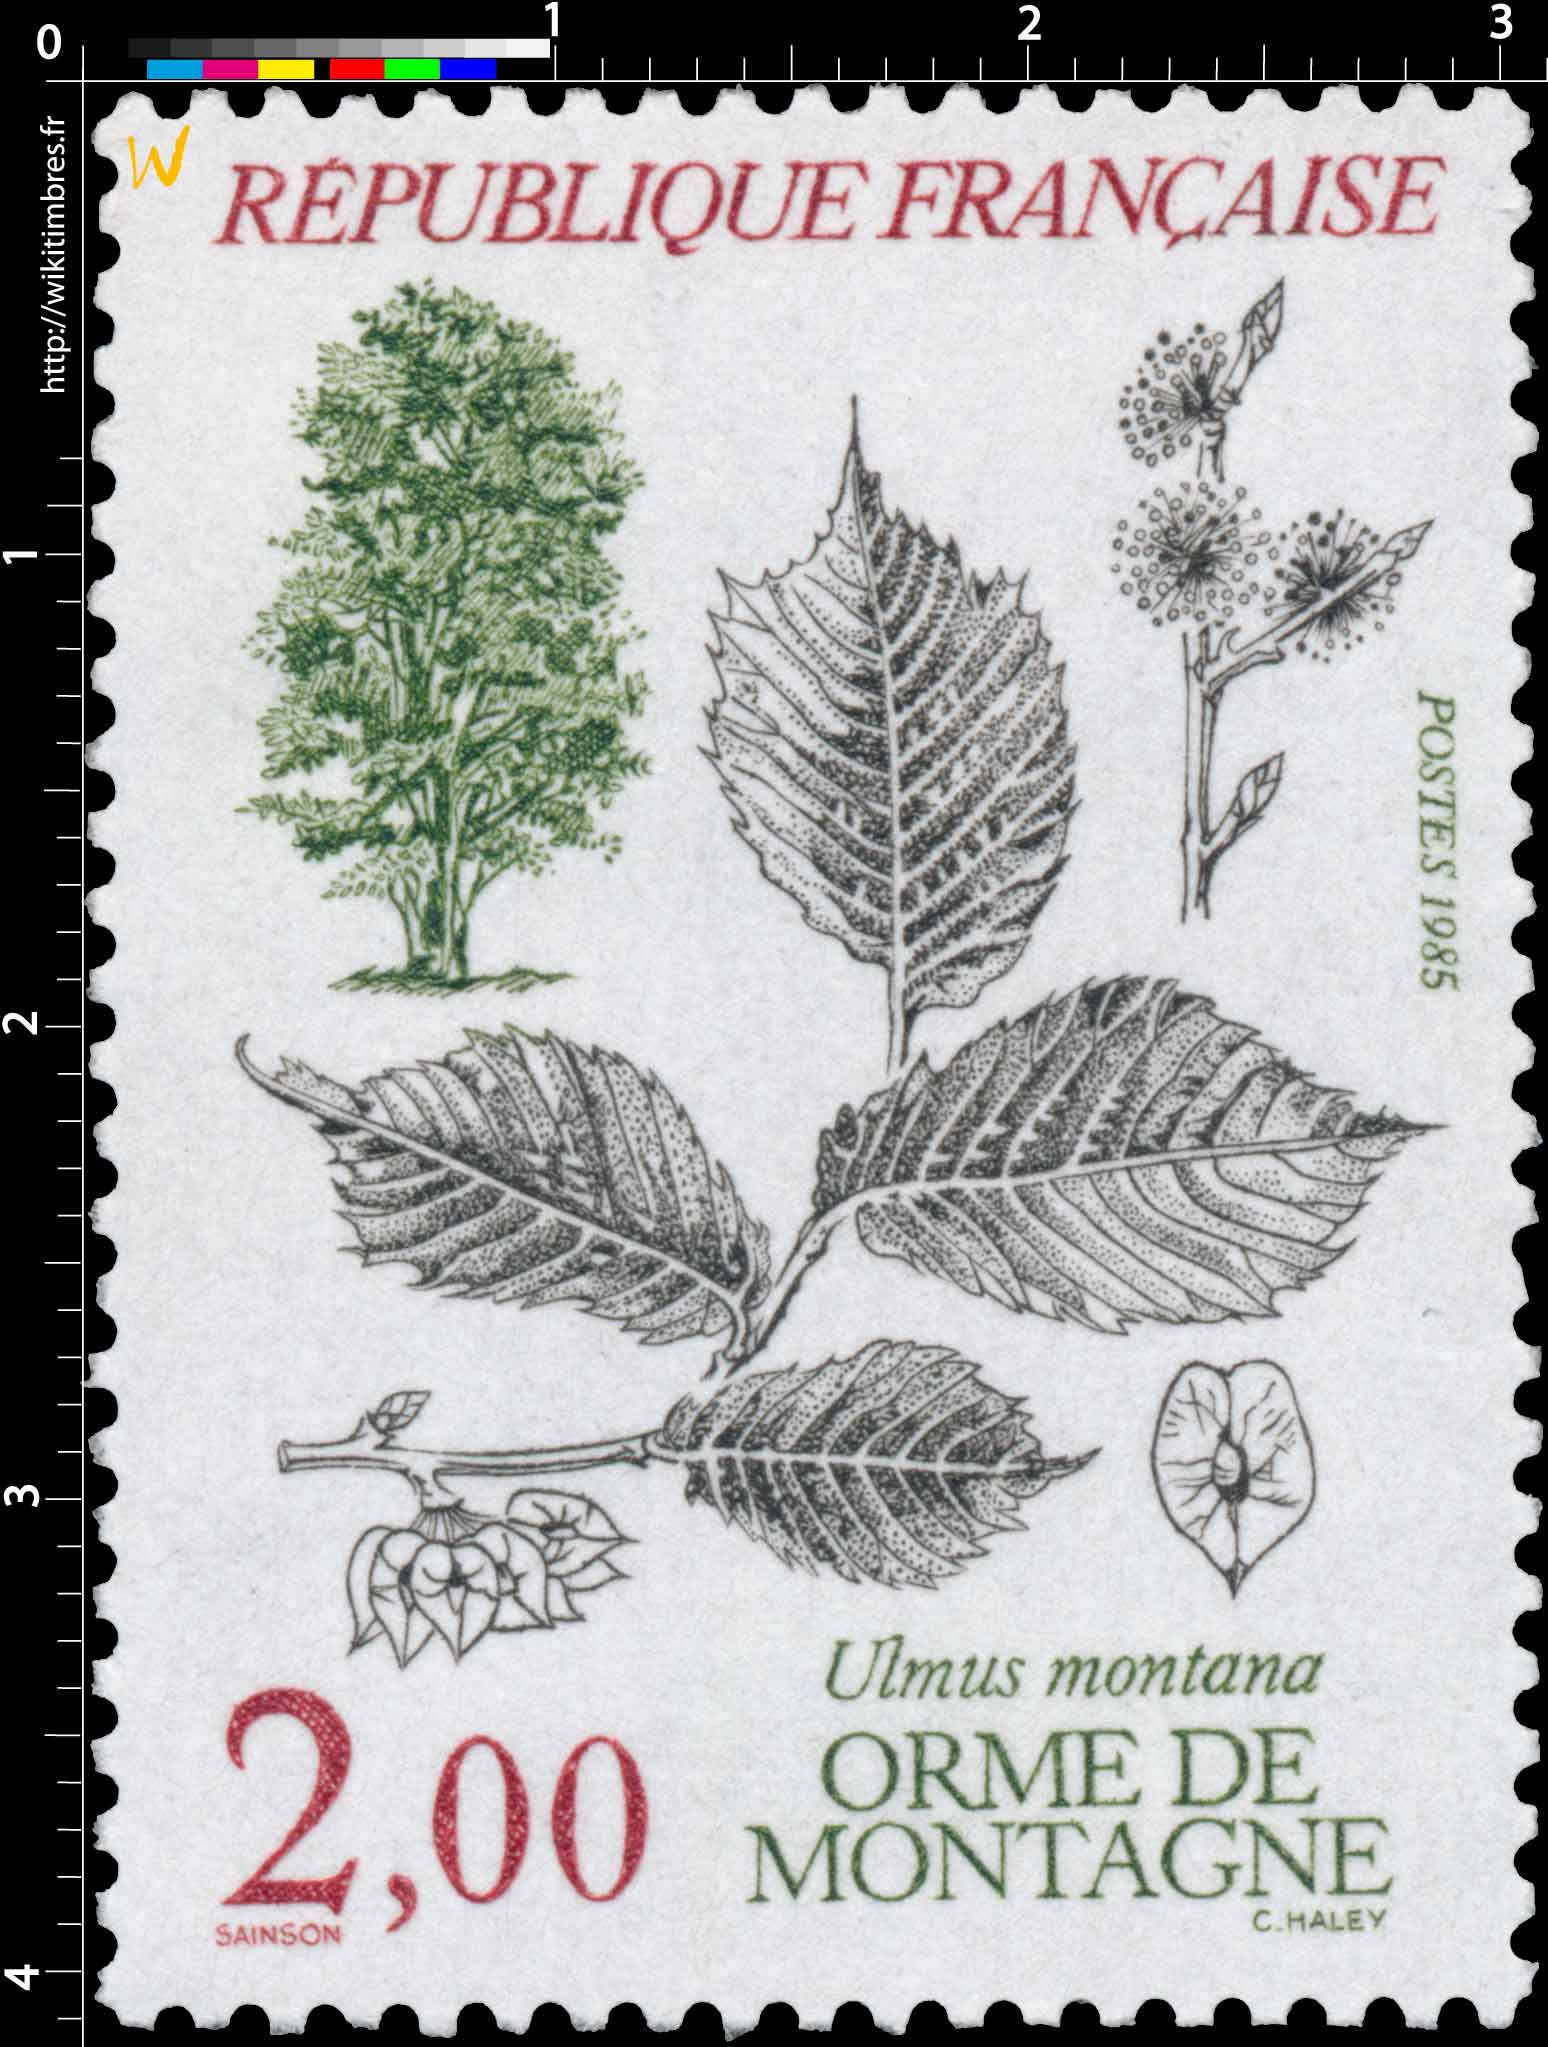 1985 ORME DE MONTAGNE Ulmus montana